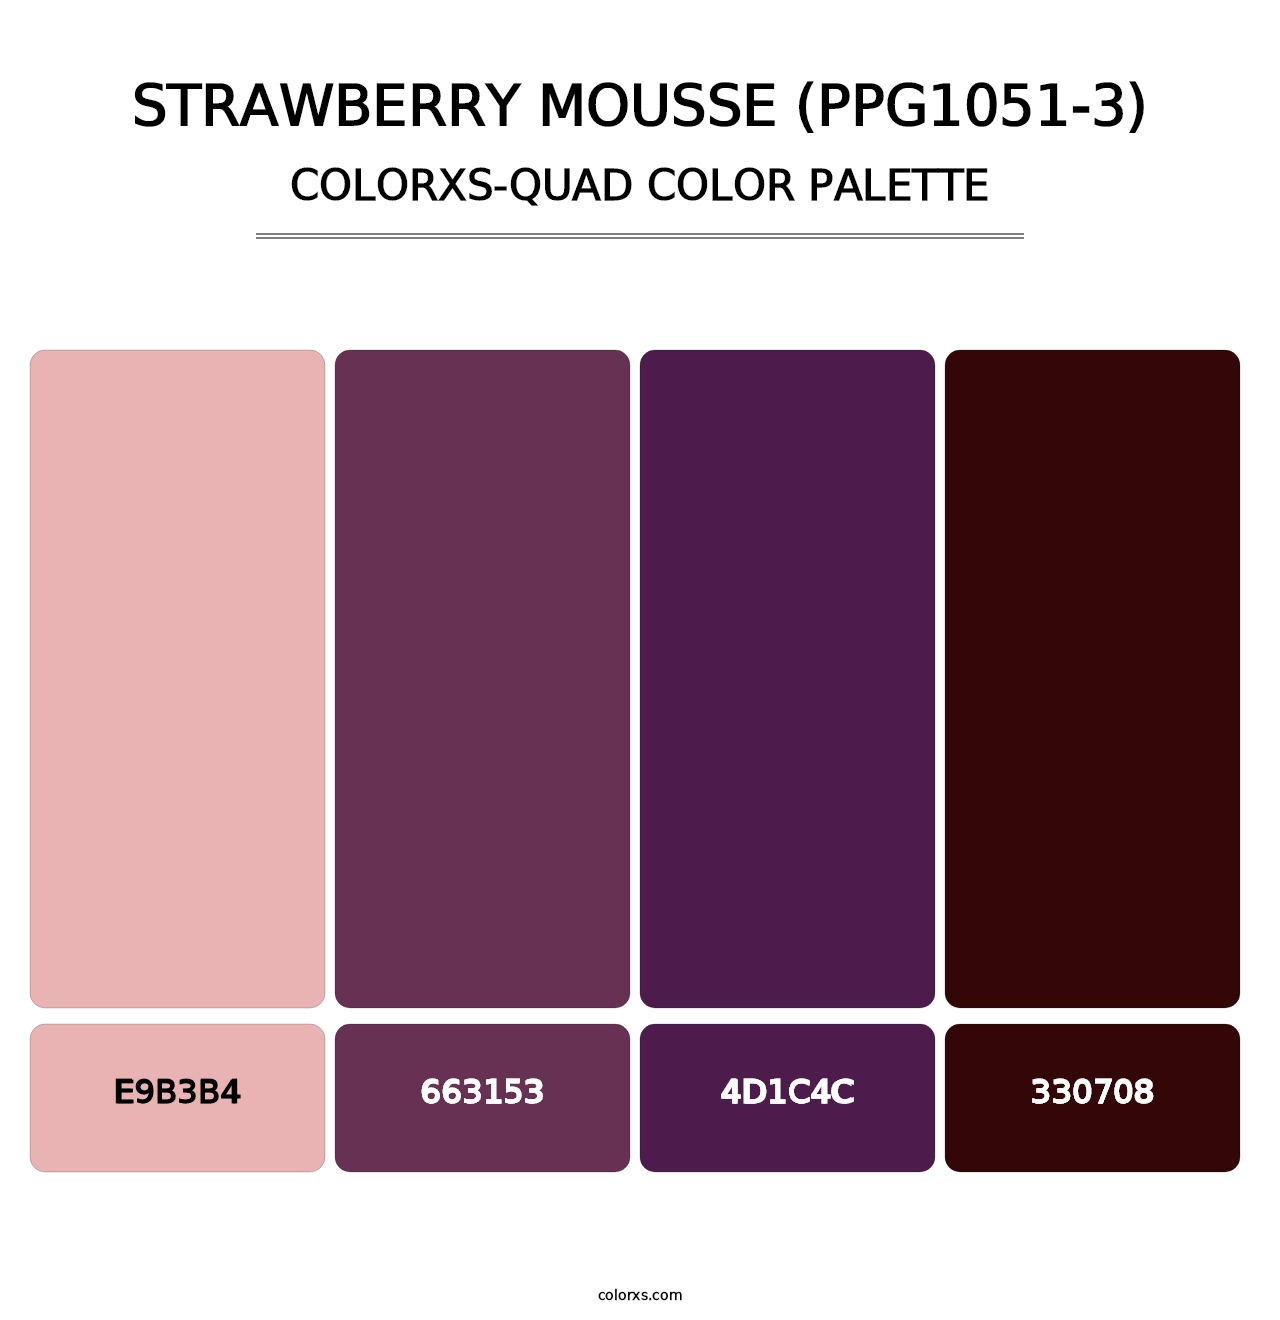 Strawberry Mousse (PPG1051-3) - Colorxs Quad Palette